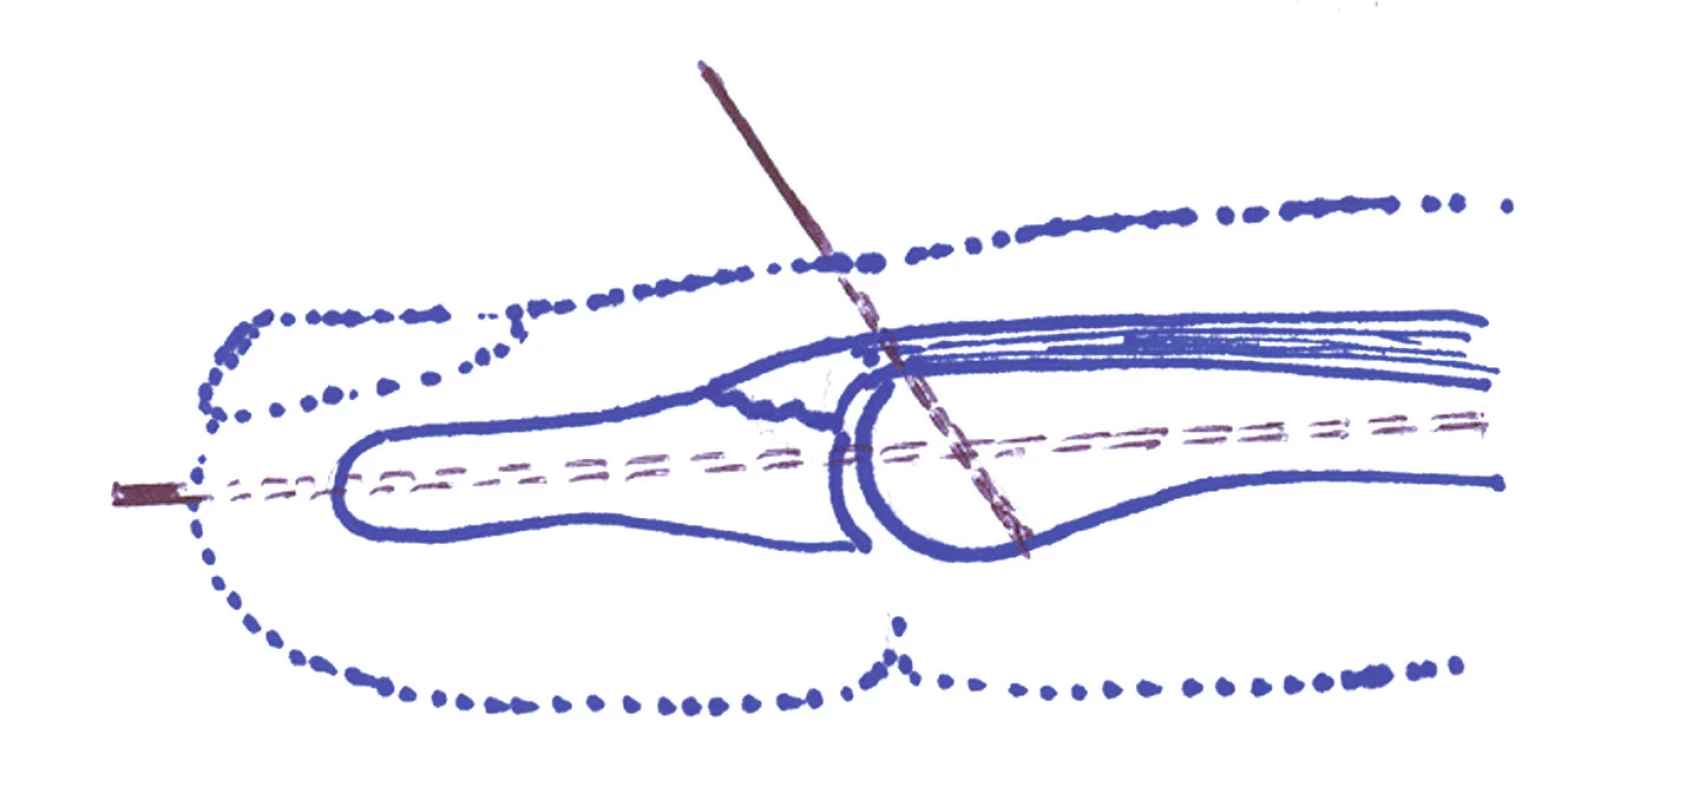 Technika extenčního bloku. Při plné flexi v distálním interfalangeálním článku je nejprve zaveden perkutánně Kirschnerův drát přes koncovou část dorzální aponeurózy do středního článku.
Následně je provedena dorzální distálního článku a přes apex prstu je zaveden druhý Kirschnerův drát do článku středního.